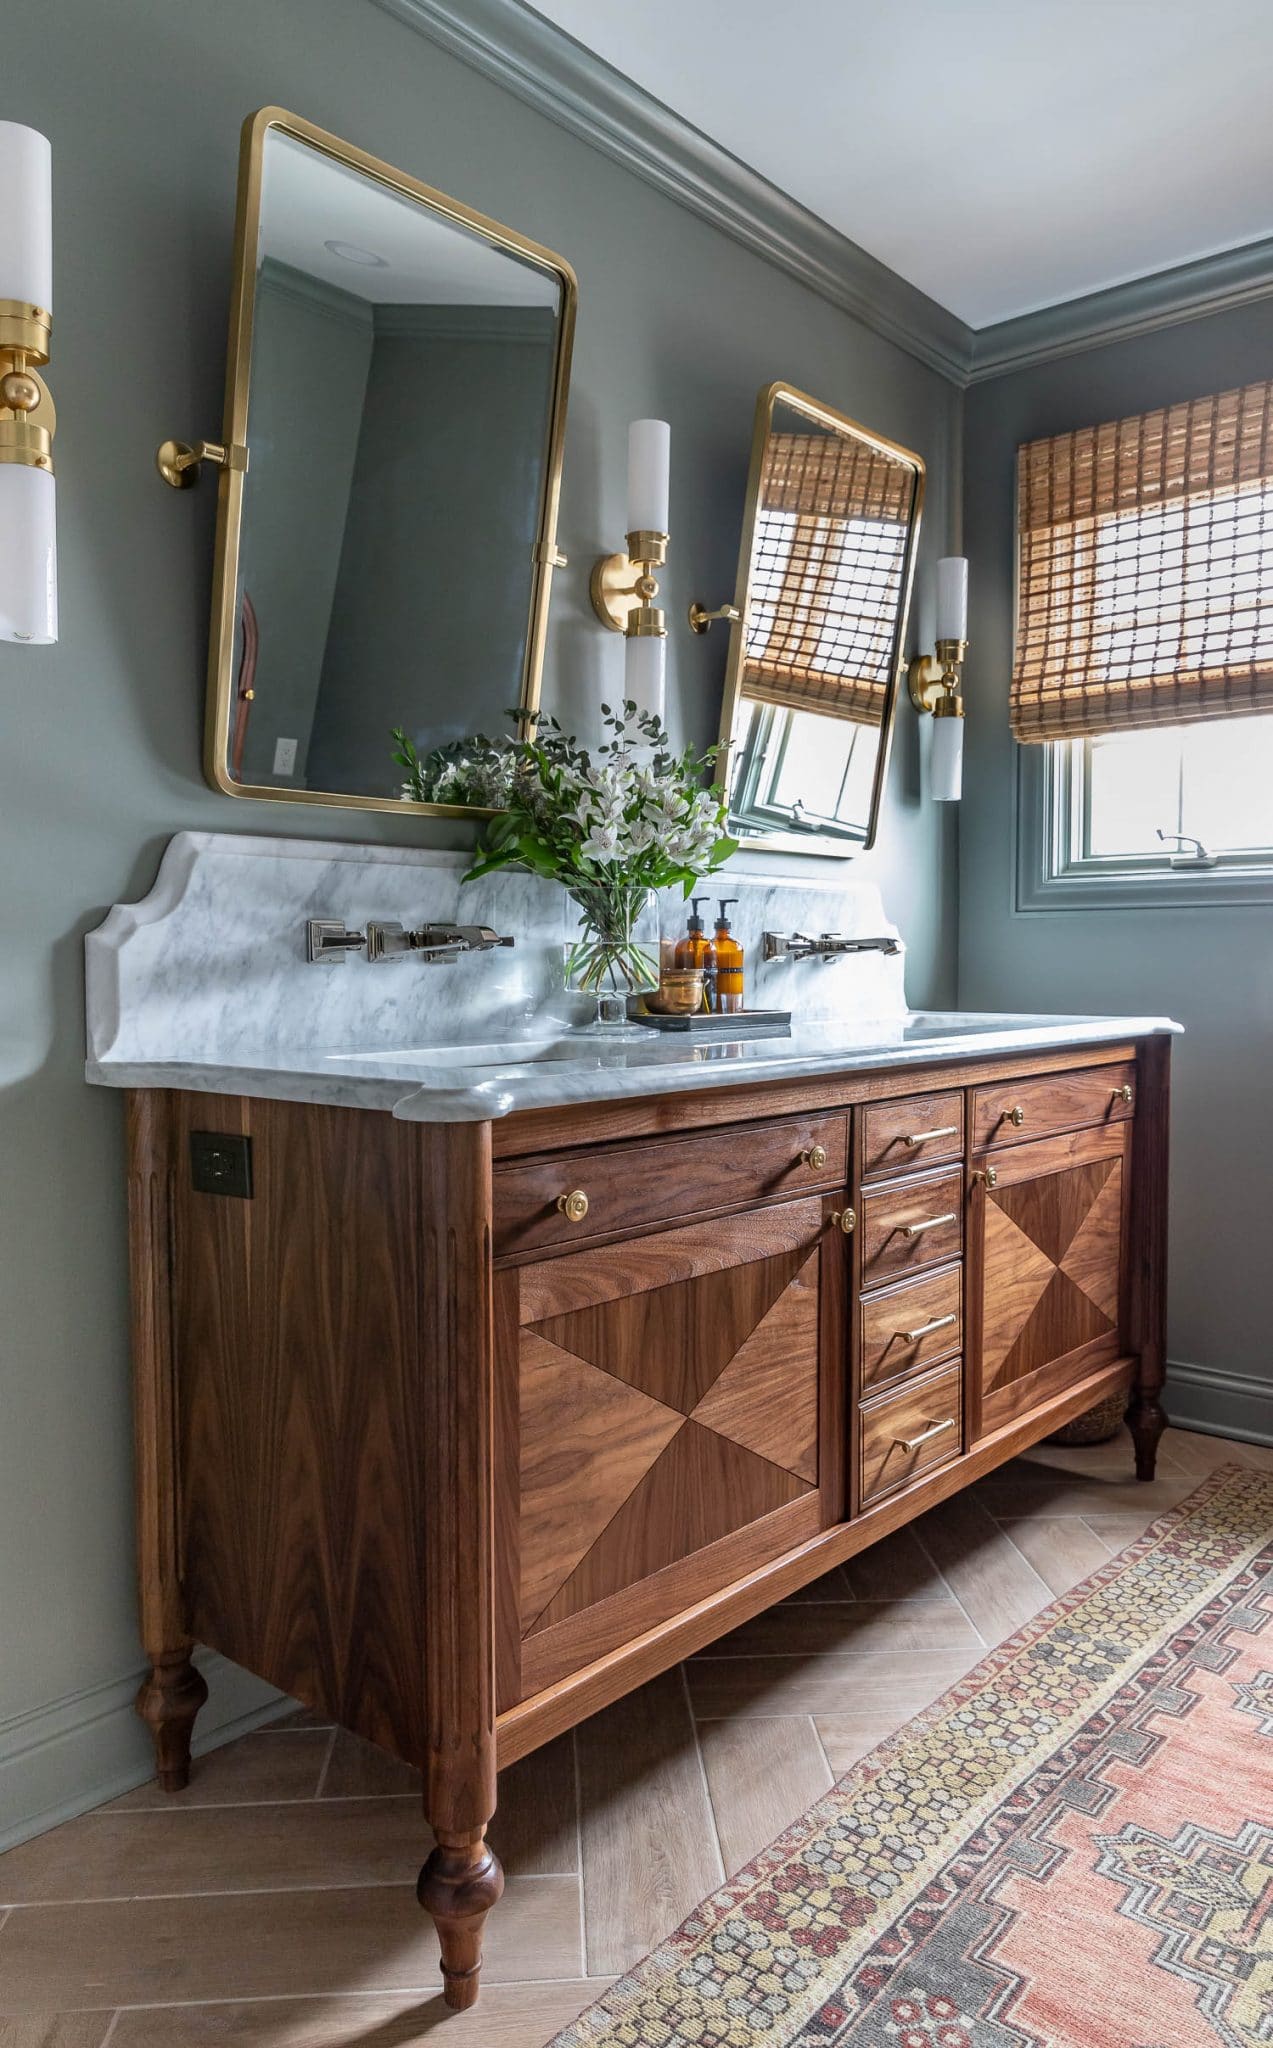 5 Bathroom Vanities For Your Next Renovation